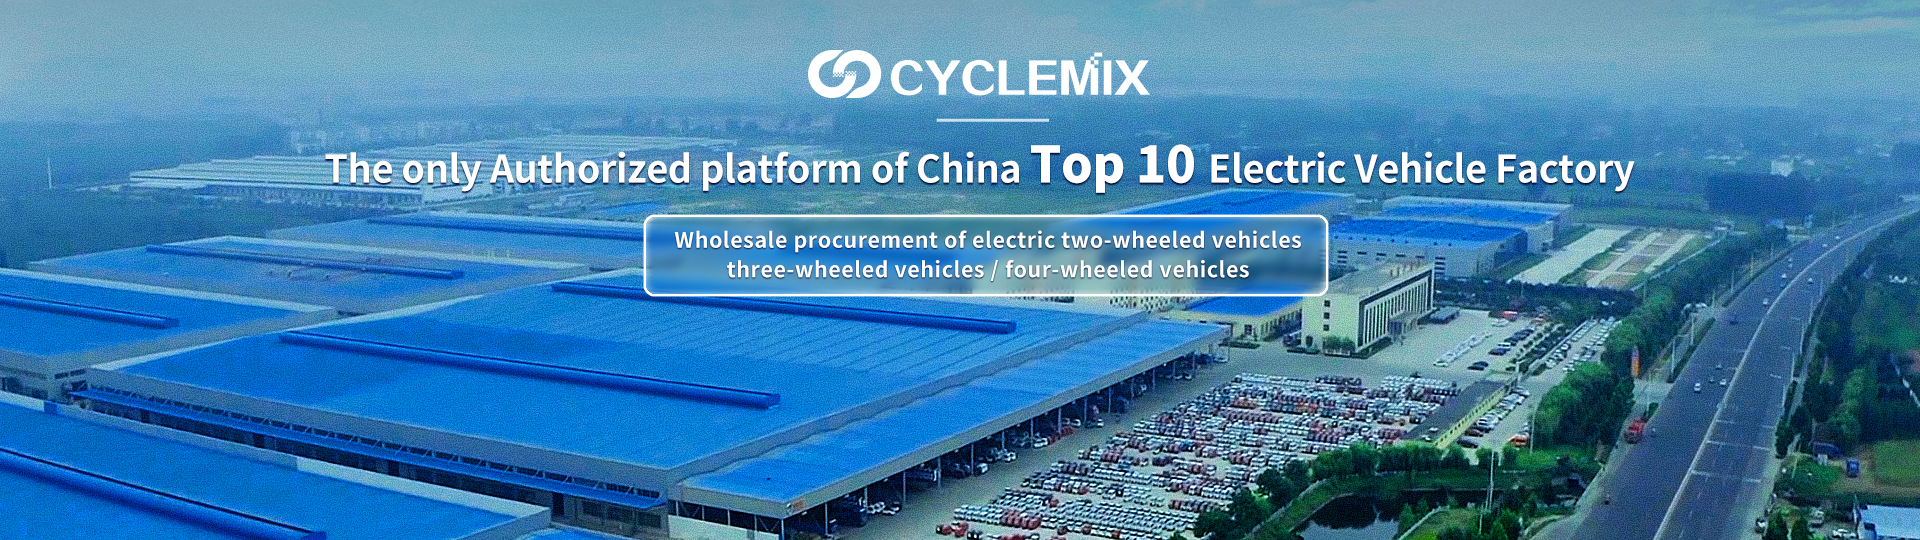 I-CYCLEMIX Okuwukuphela kwephathi/inkundla egunyaziwe ye-China Top 10 Electric Vehicle Factory